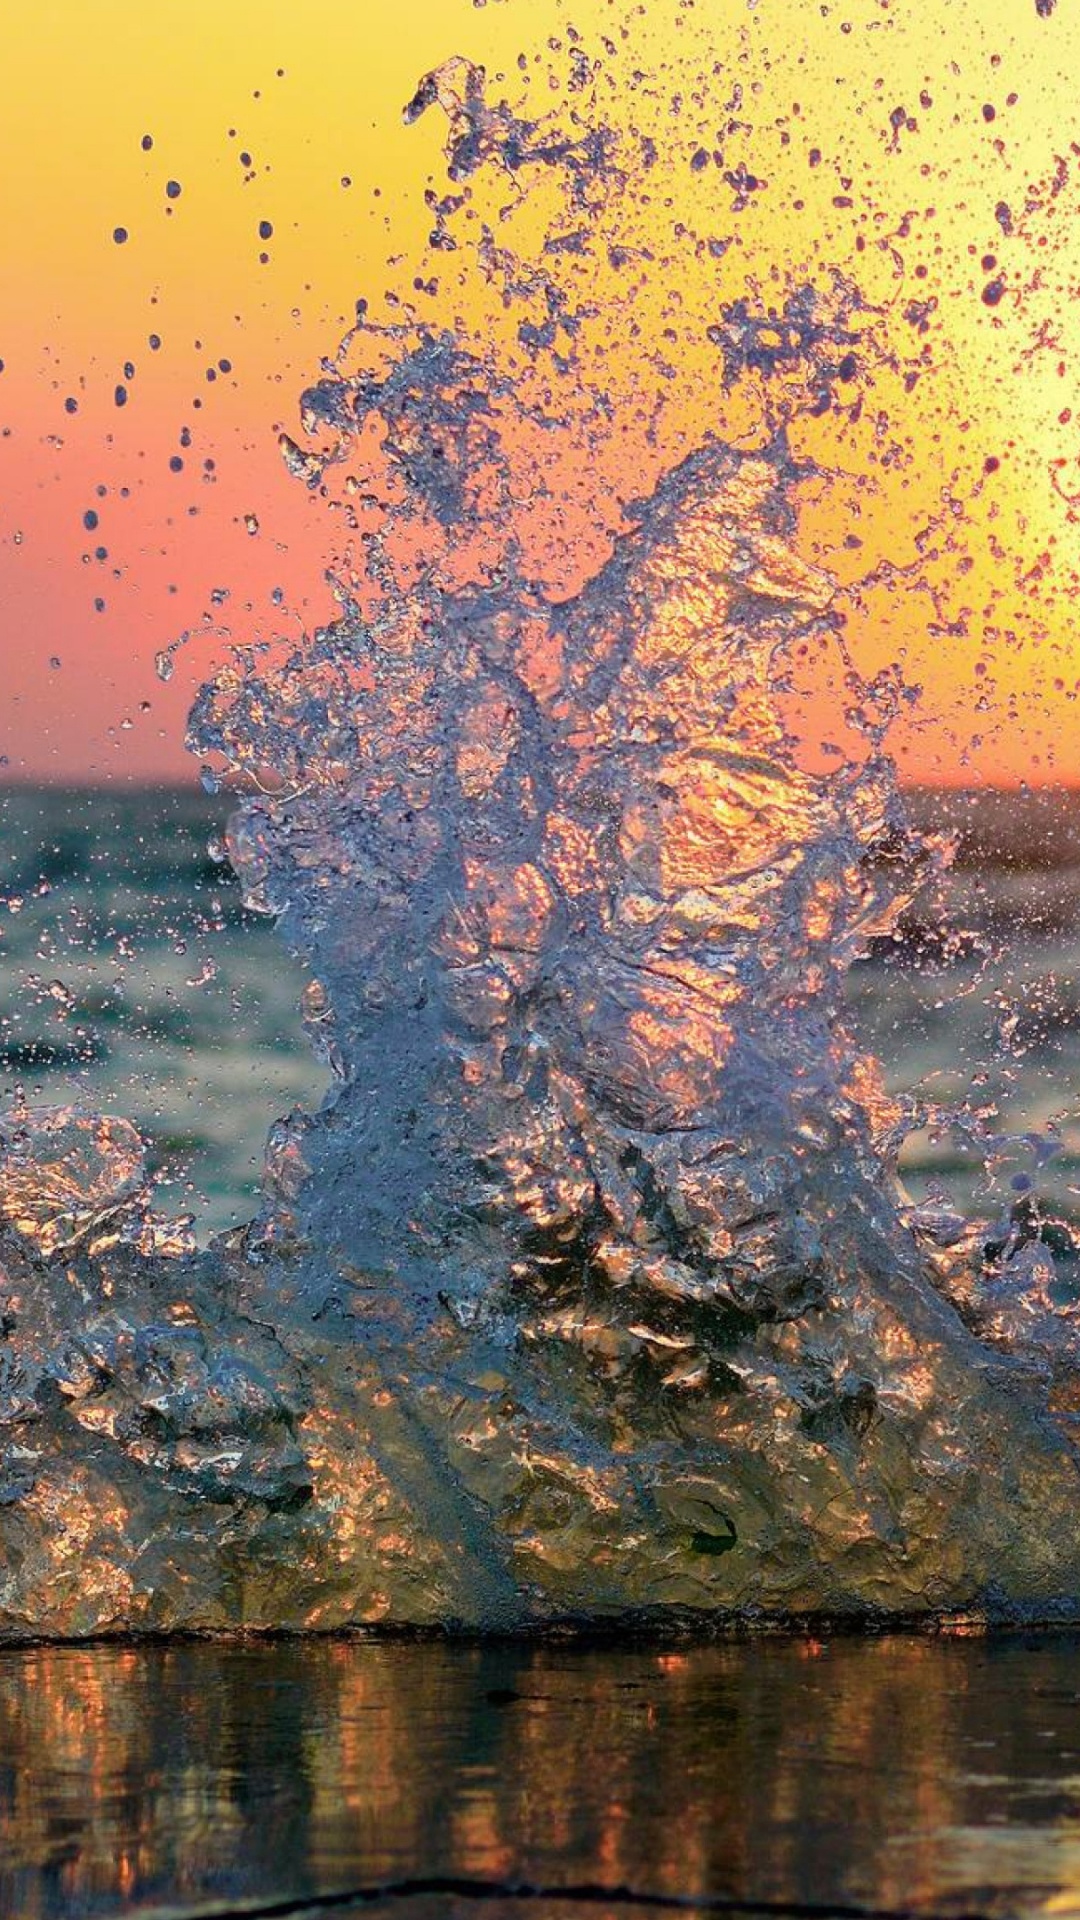 Tronco de Árbol Marrón Sobre el Agua Durante la Puesta de Sol. Wallpaper in 1080x1920 Resolution